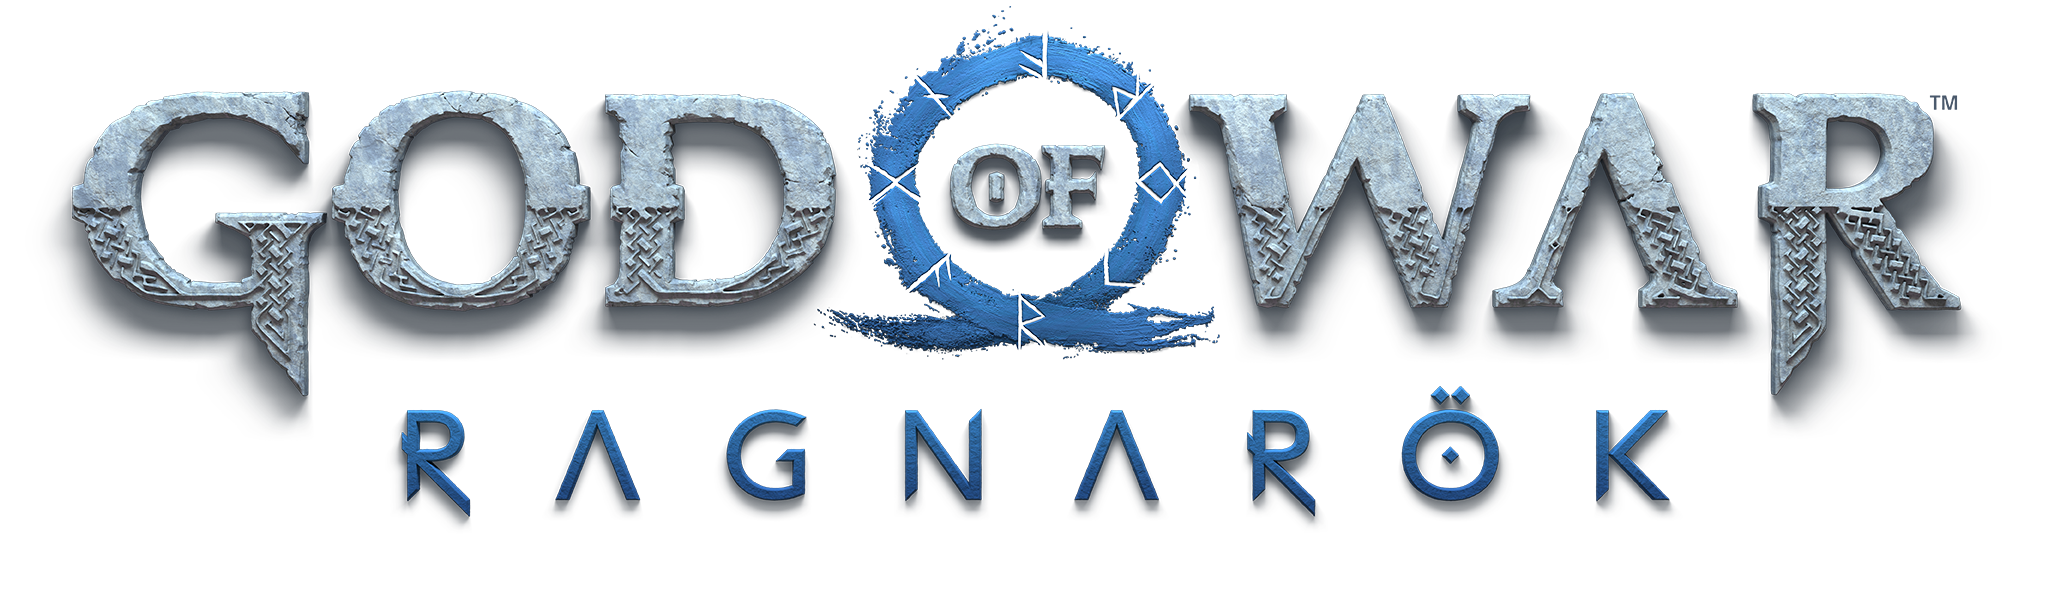 God of War Ragnarök: Valhalla PS5